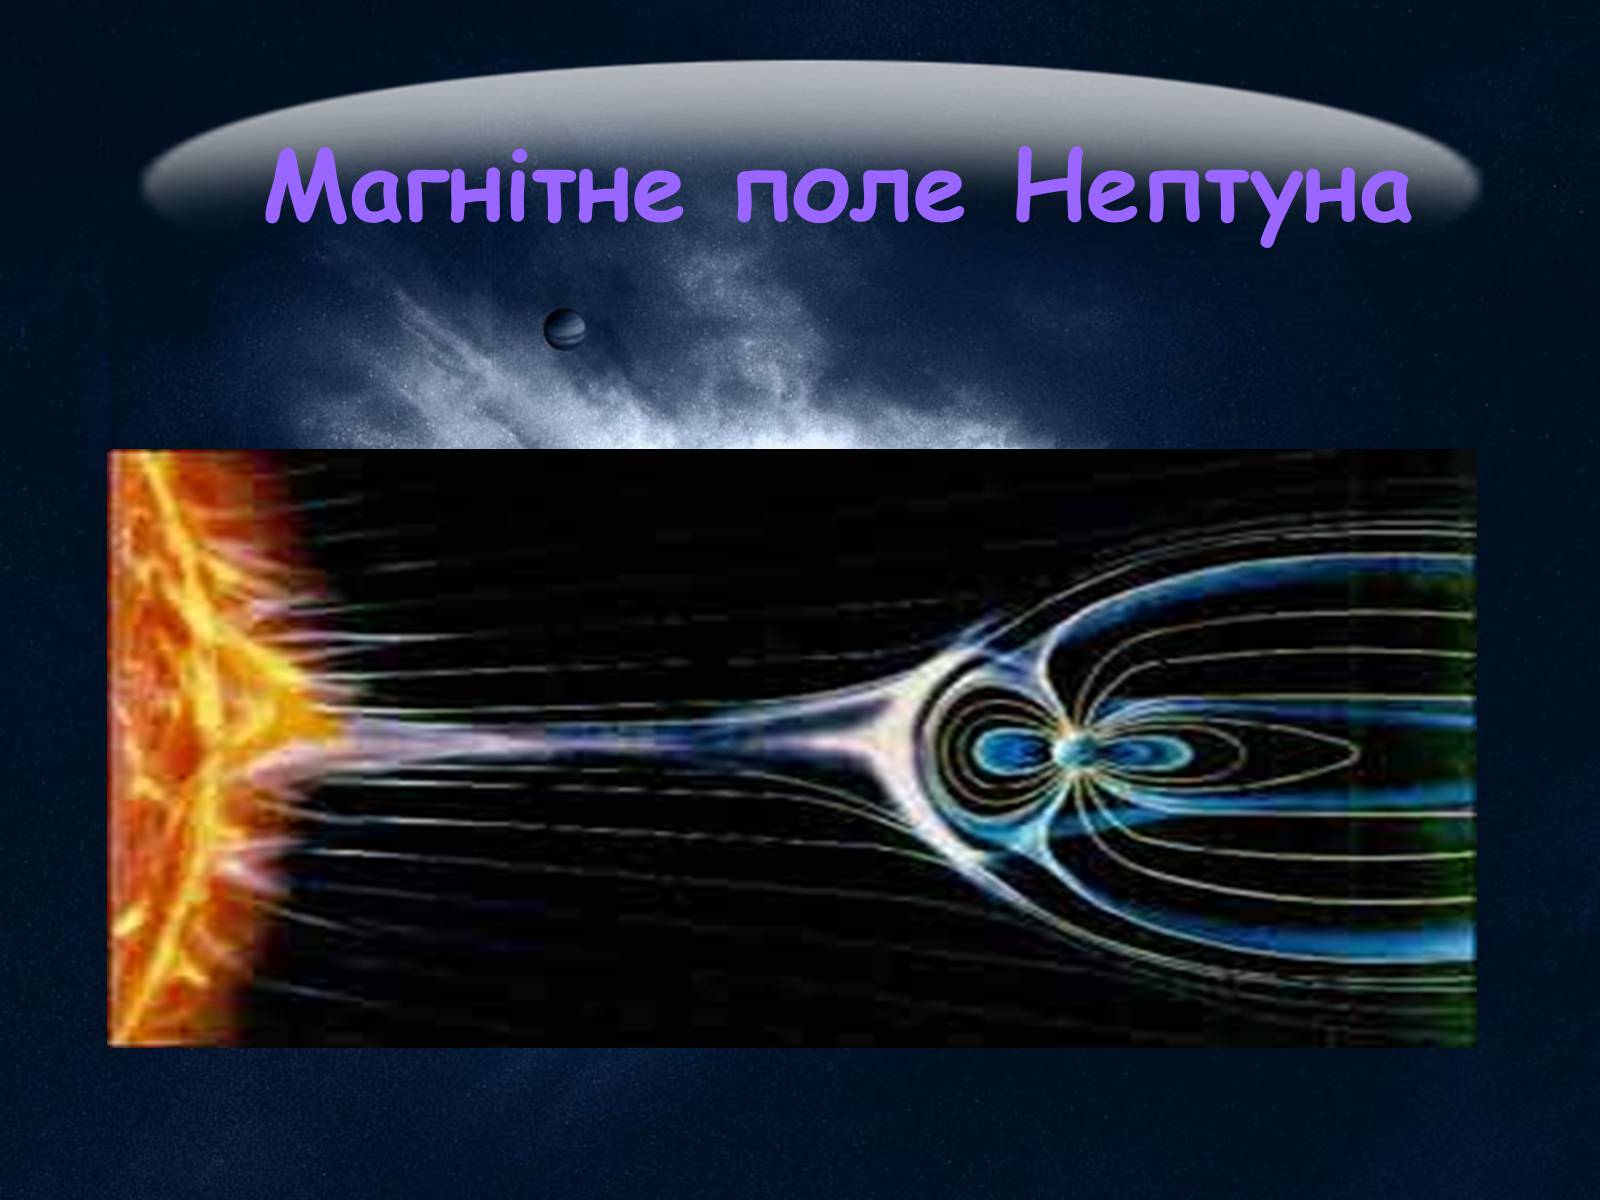 Ученые нептуна. Магнитное поле Нептуна. Магнитосфера Нептуна. Магнитное поле Нептуна презентация. Магнитное поле планеты Нептун.